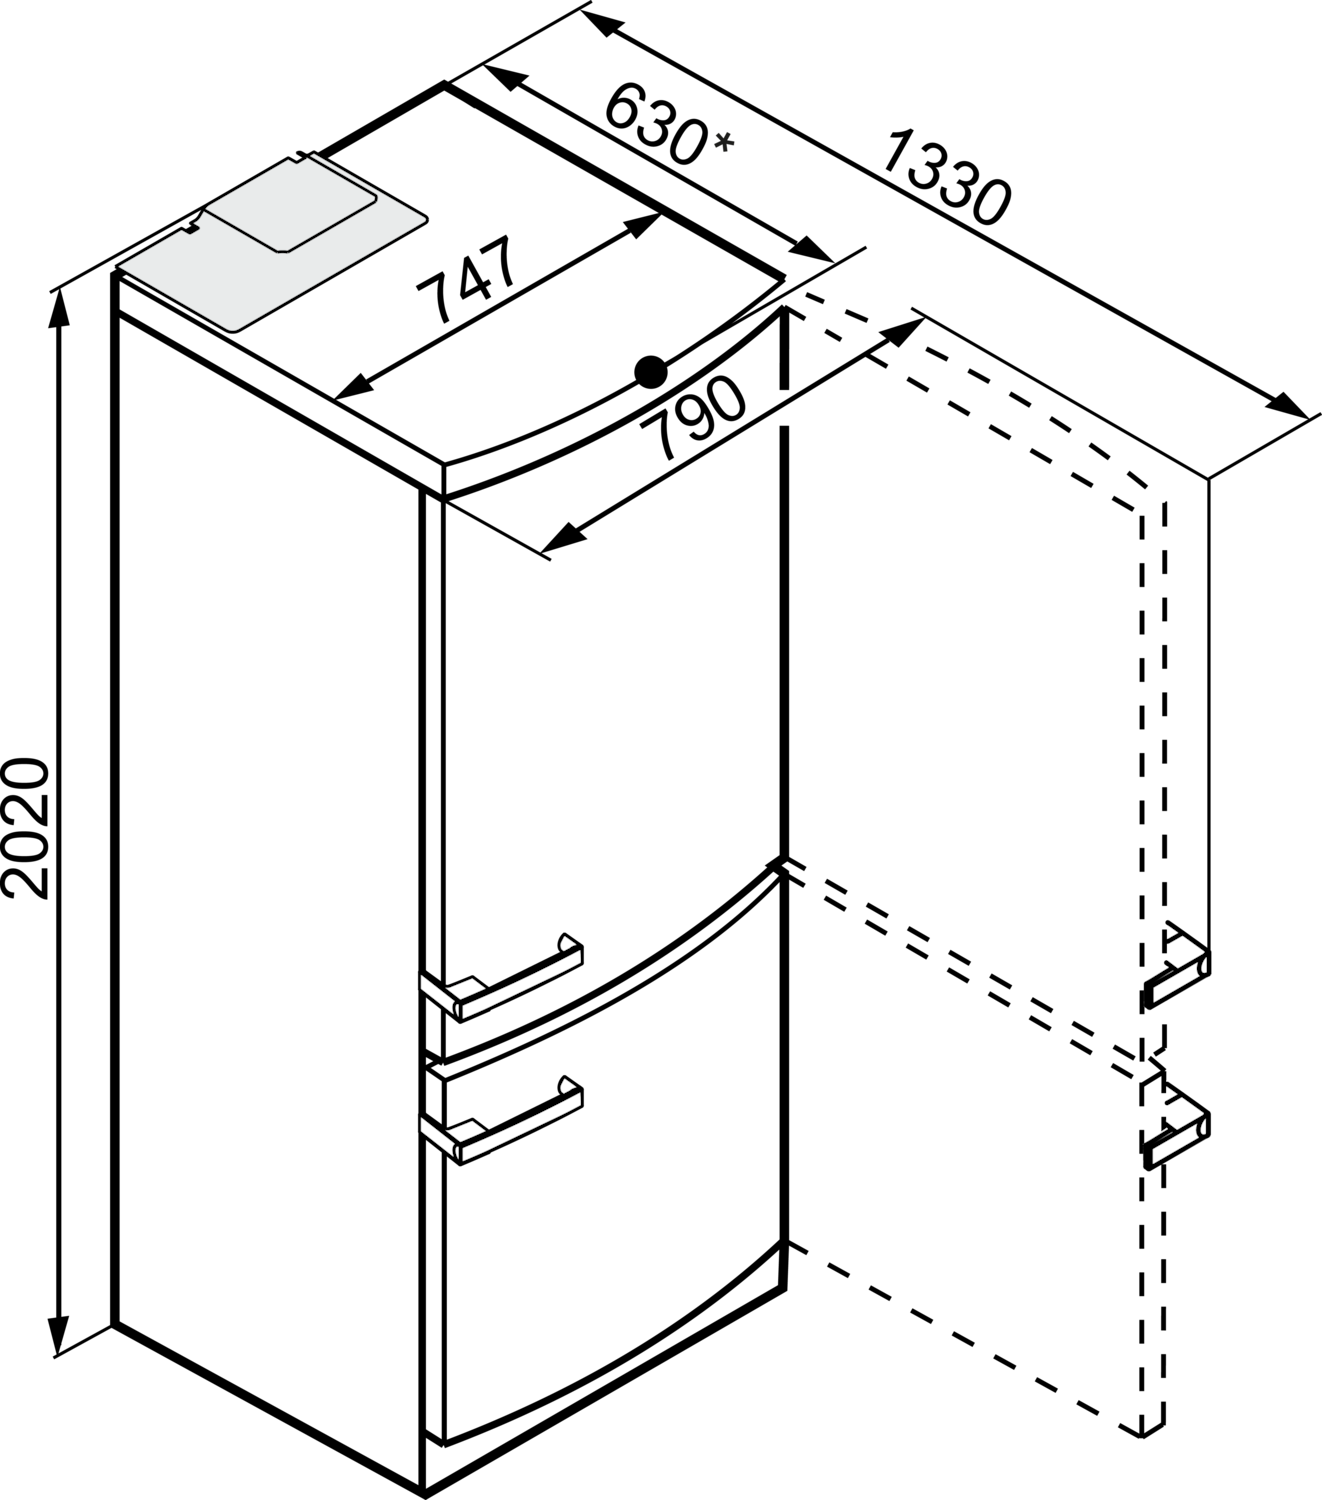 Sidabrinis šaldytuvas su šaldikliu, SoftClose ir PerfectFresh funkcijomis, plotis 75 cm (KFN 16947 D) product photo View41 ZOOM